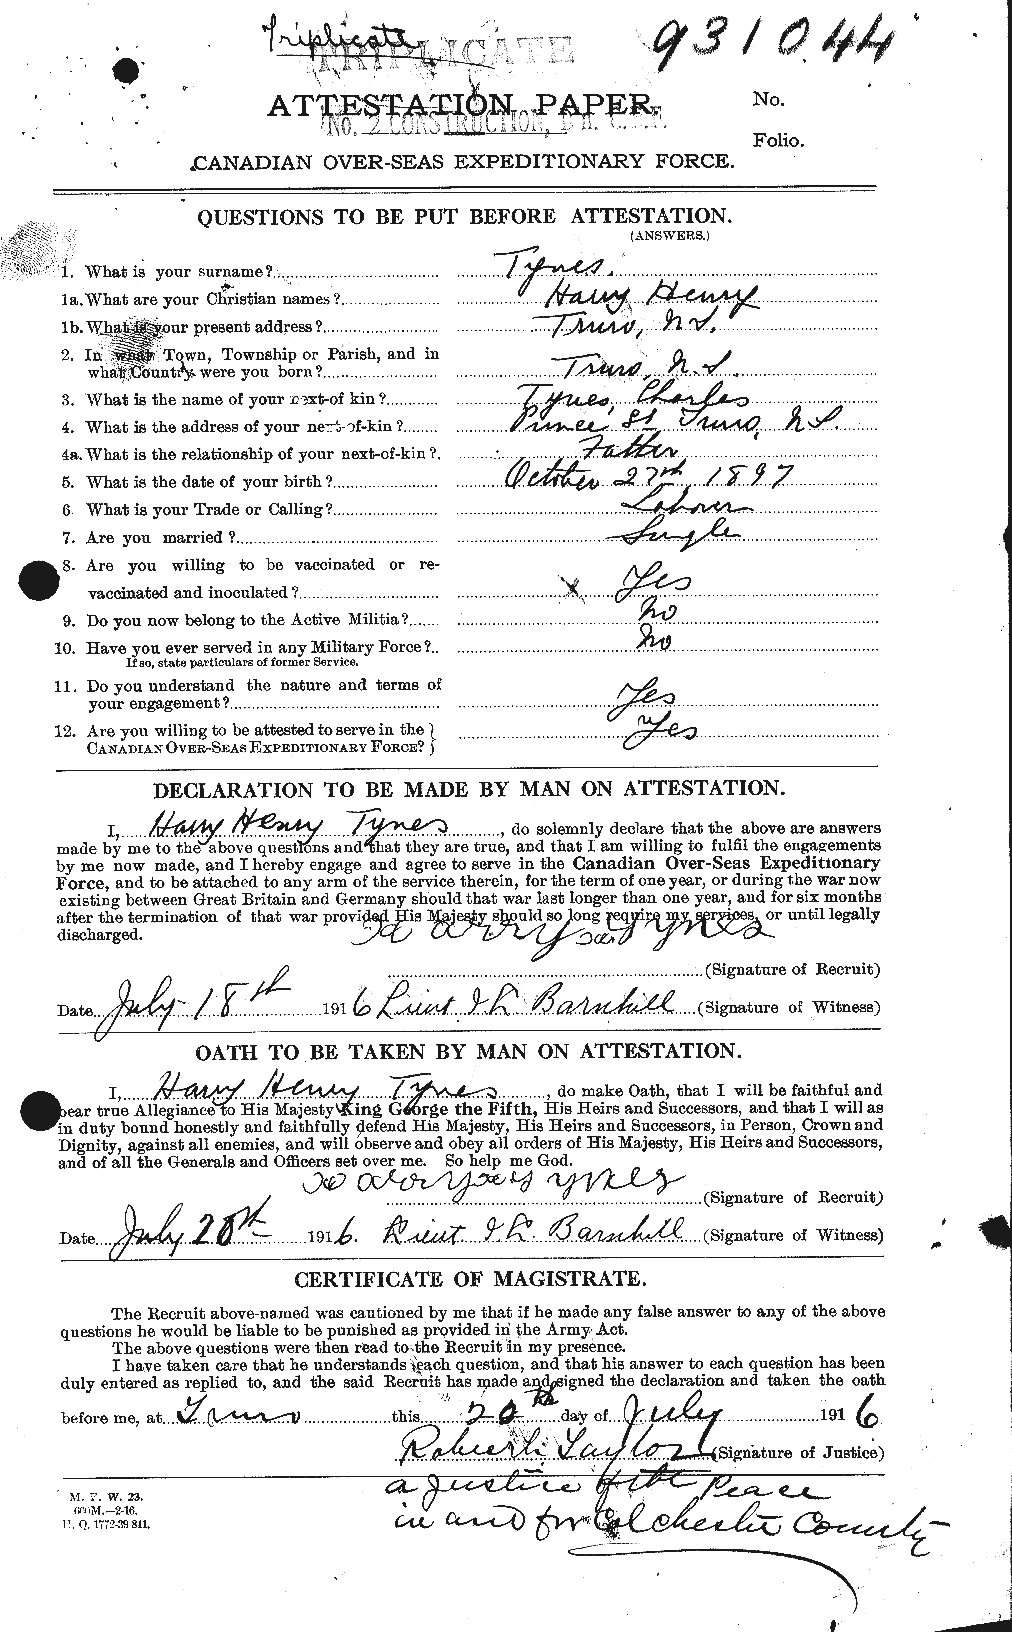 Dossiers du Personnel de la Première Guerre mondiale - CEC 644539a